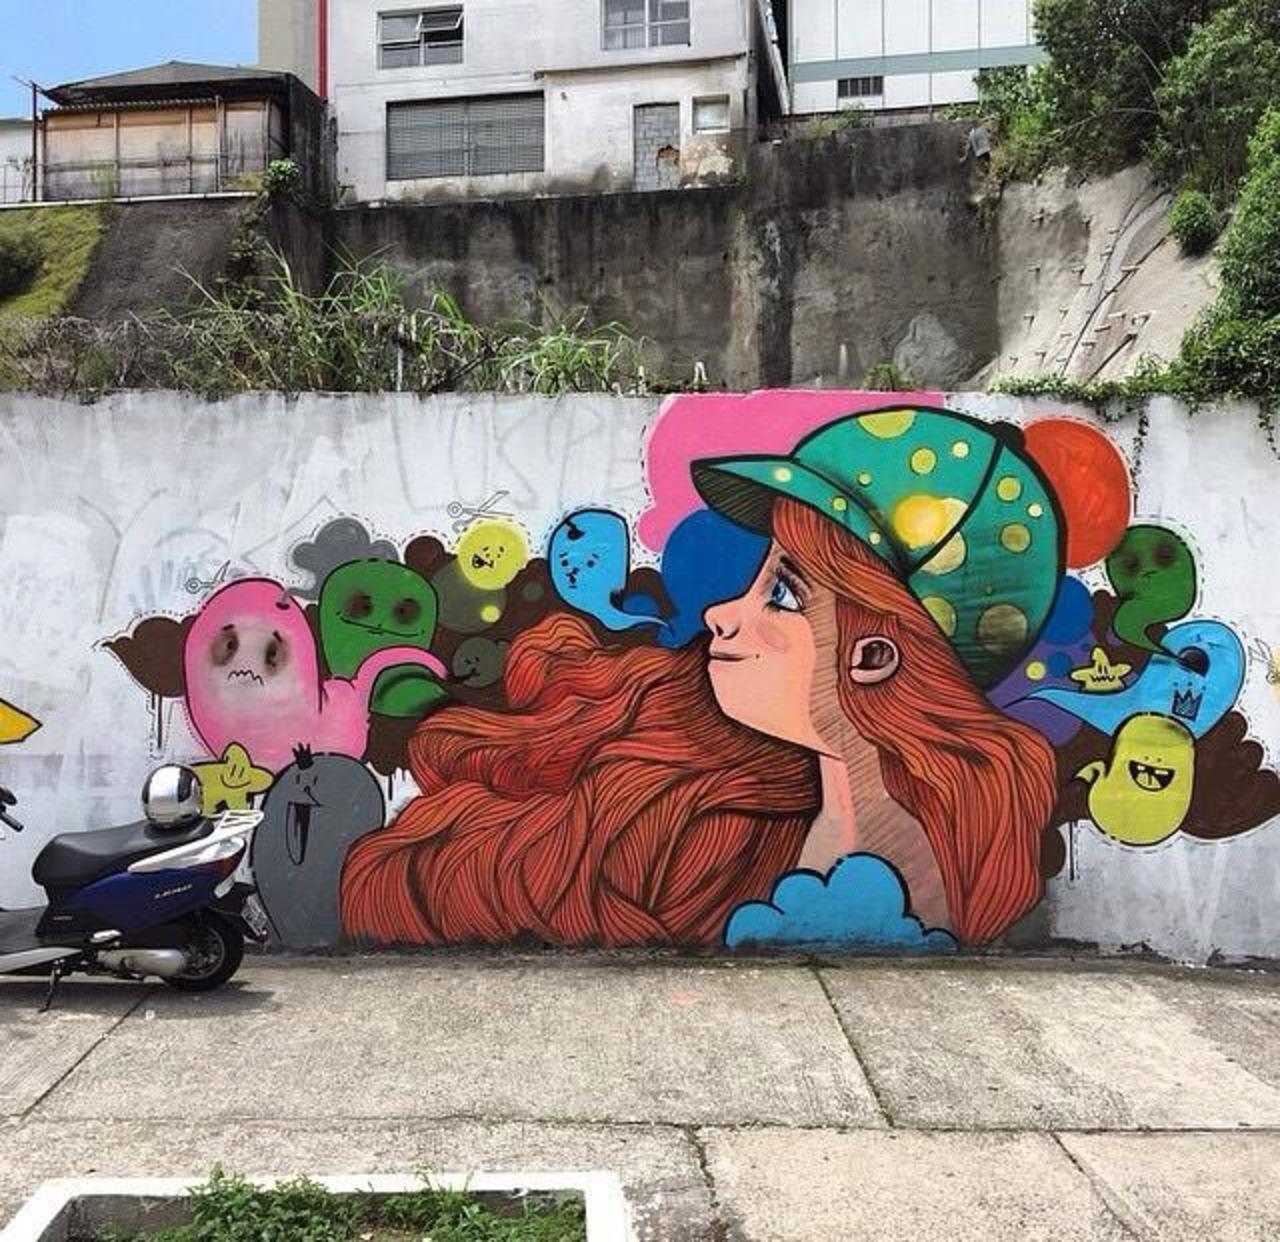 Endearing Street Art by Vupulos in São Paulo, Brazil 

#art #mural #graffiti #streetart http://t.co/WOzHoElp3R